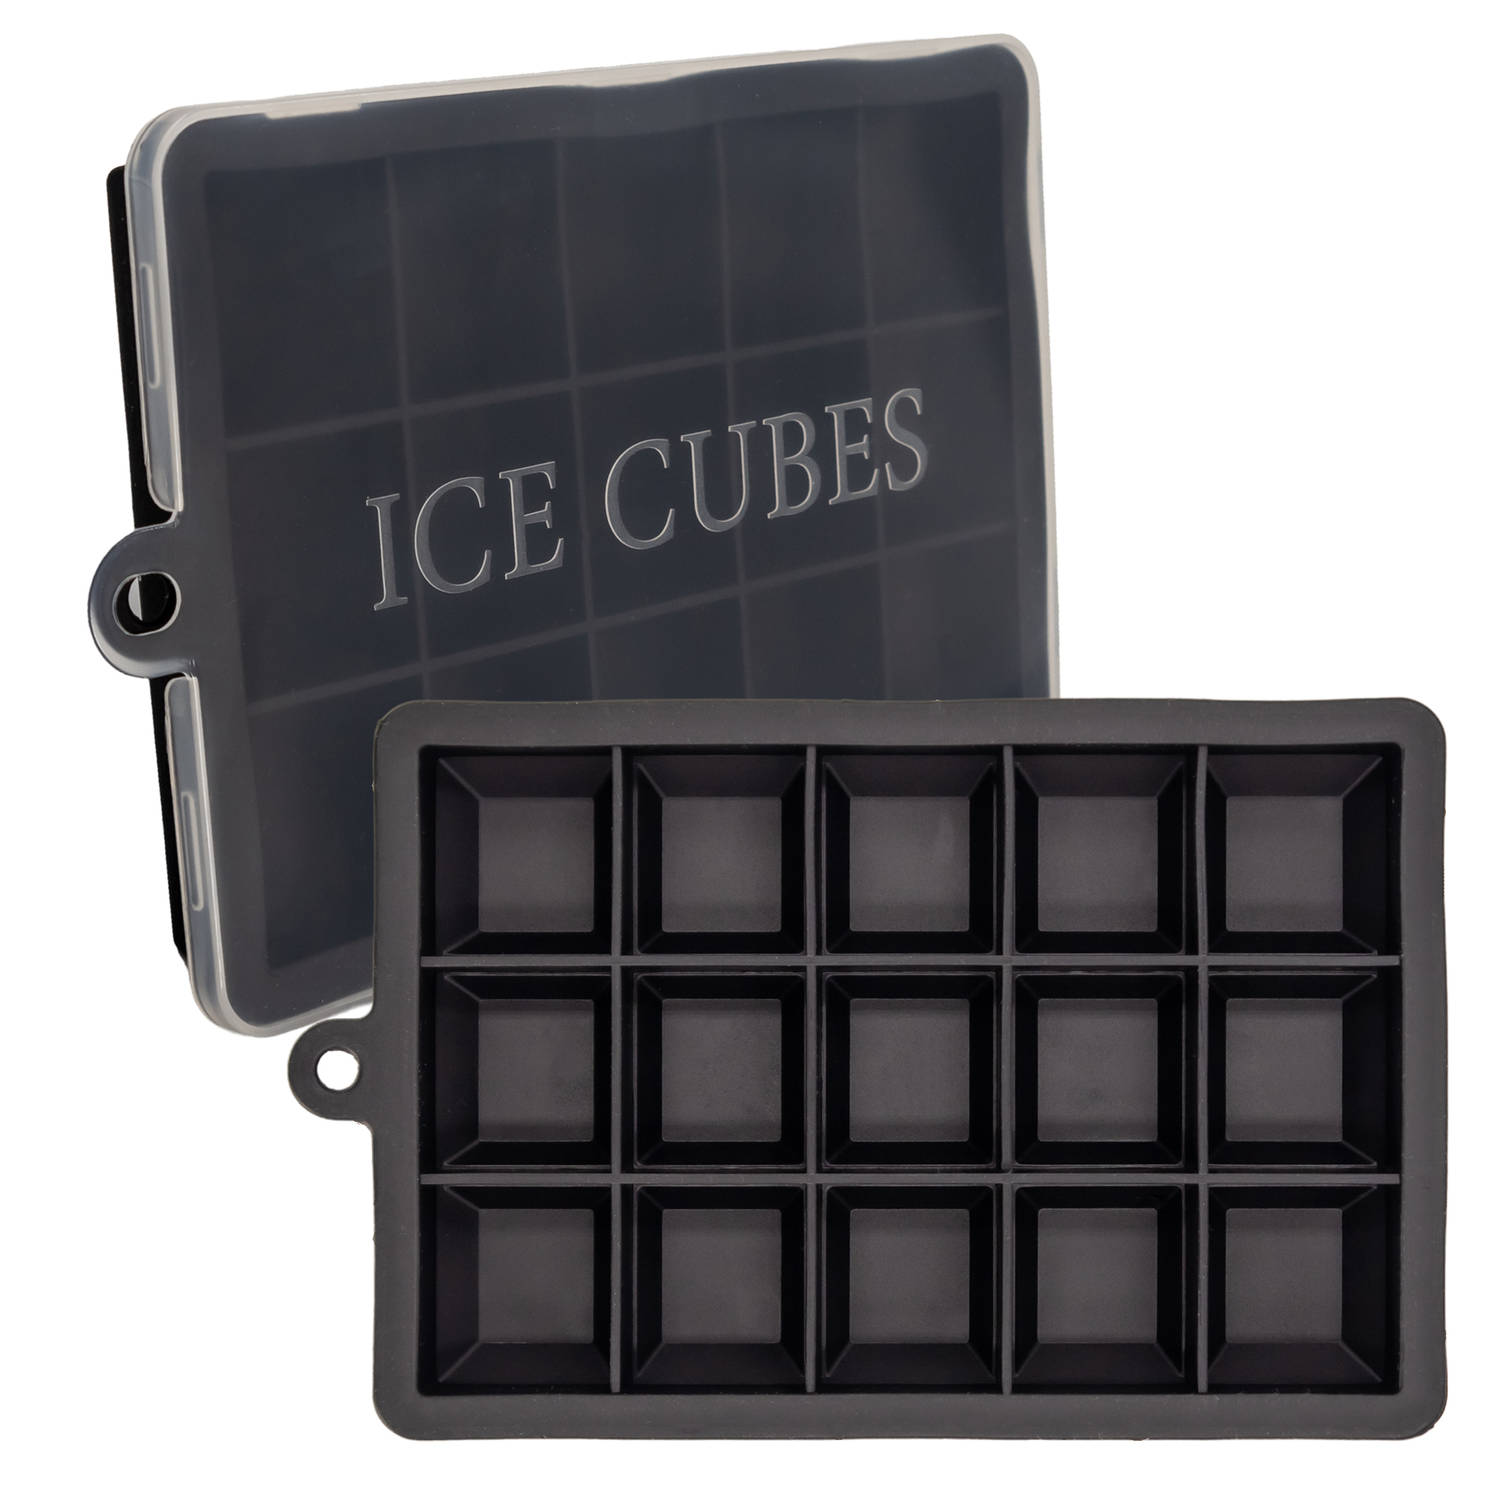 INTIRILIFE 2 x ijsblokjesvormen in zwart, set van 2 à 15 vakken, siliconen vormen met deksel, flexibele ijsblokjeshouder, afsluitbaar voor ijs, babyvoeding en meer